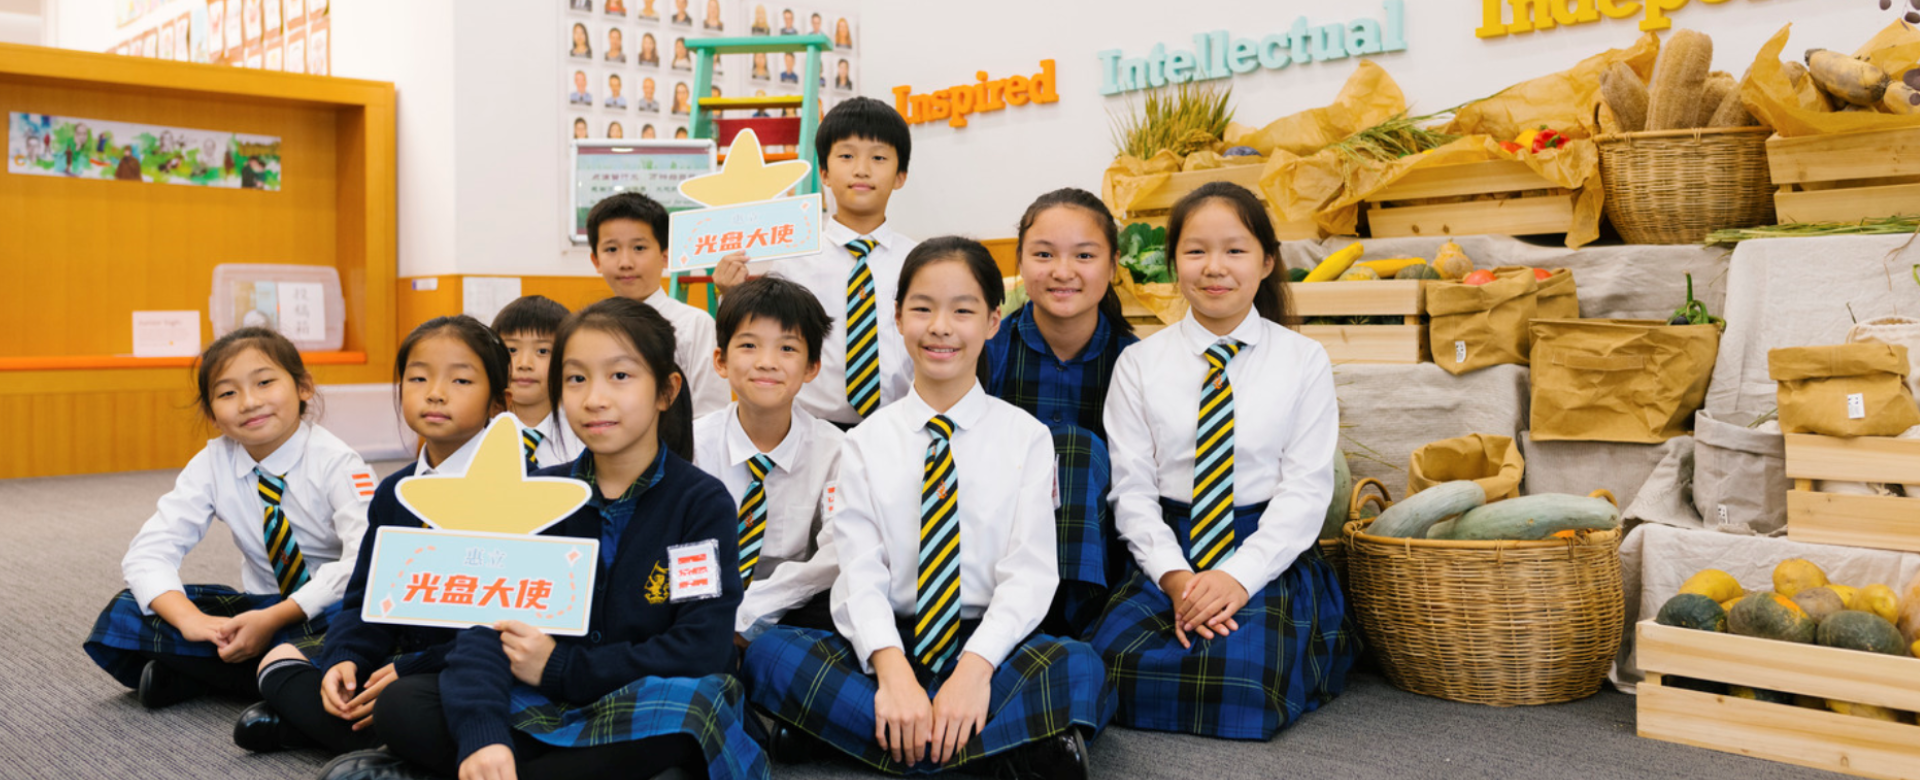 南通国际双语学校幸福关怀